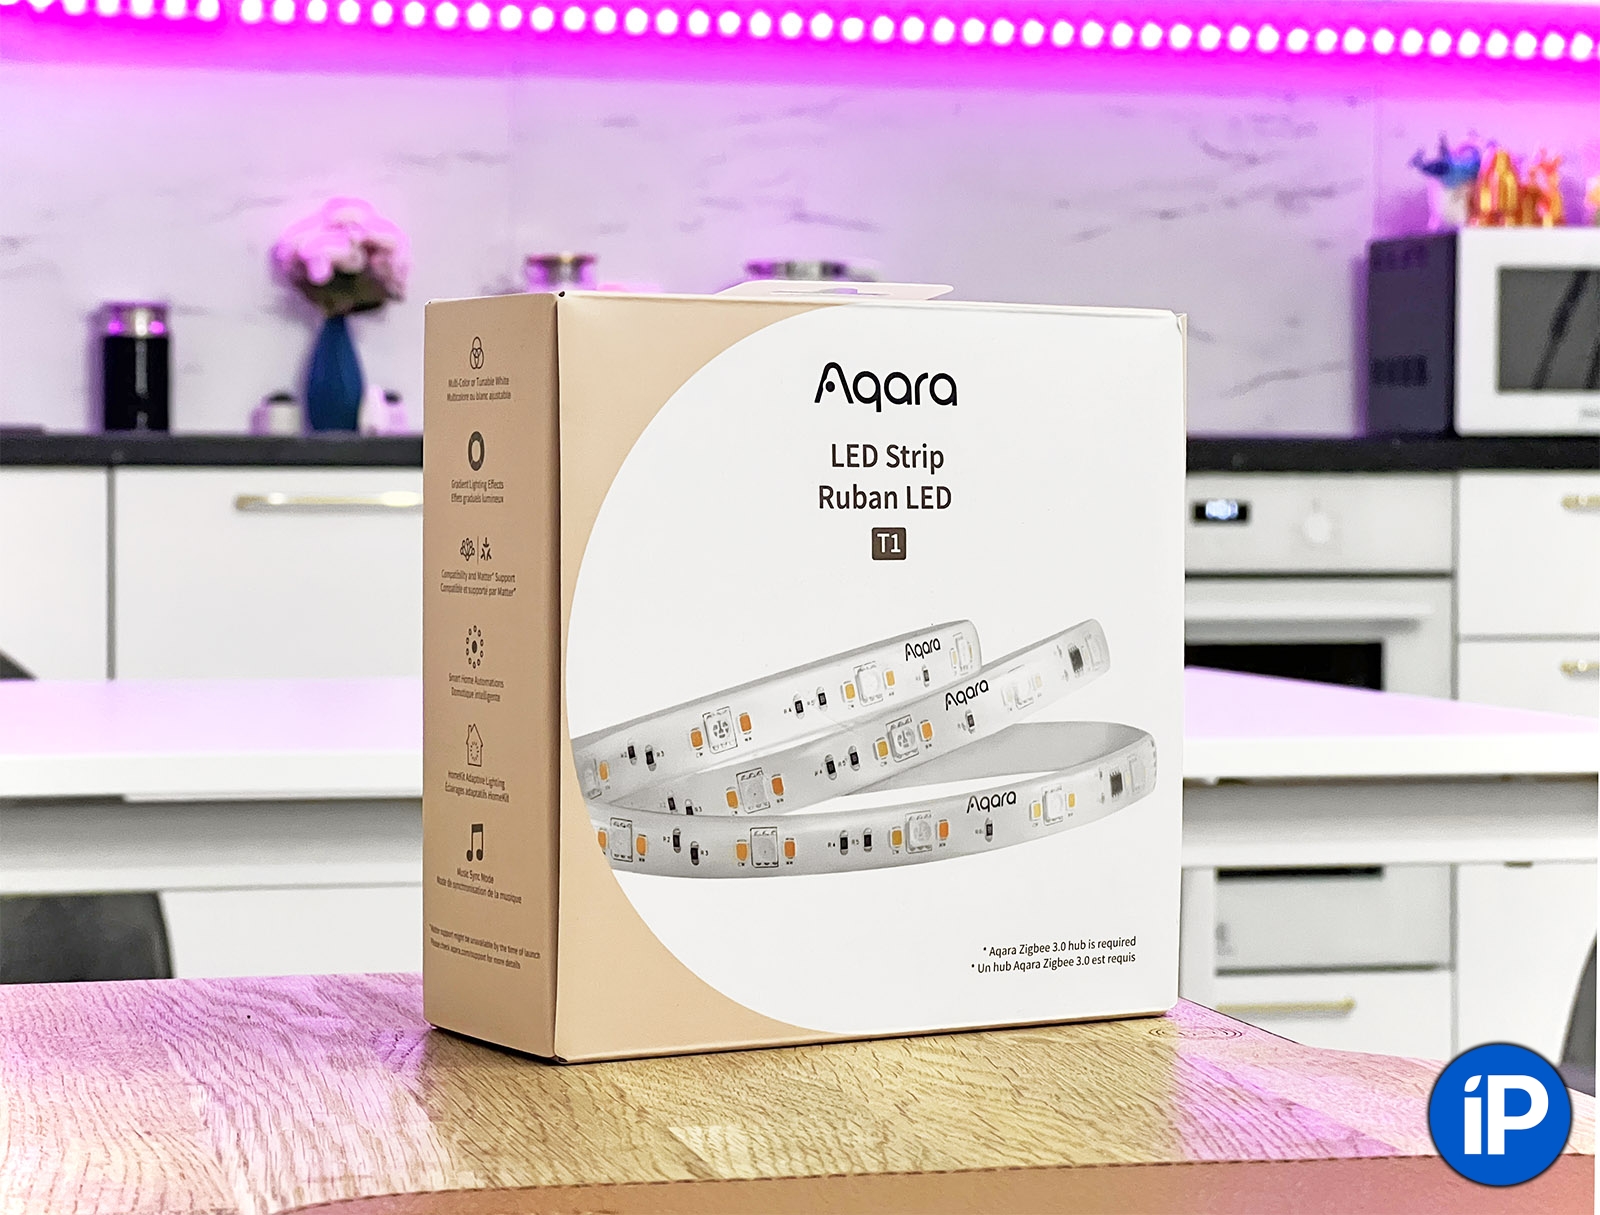 Обзор Aqara LED Strip T1. Это супер-умная светодиодная лента с HomeKit и посегментным управлением